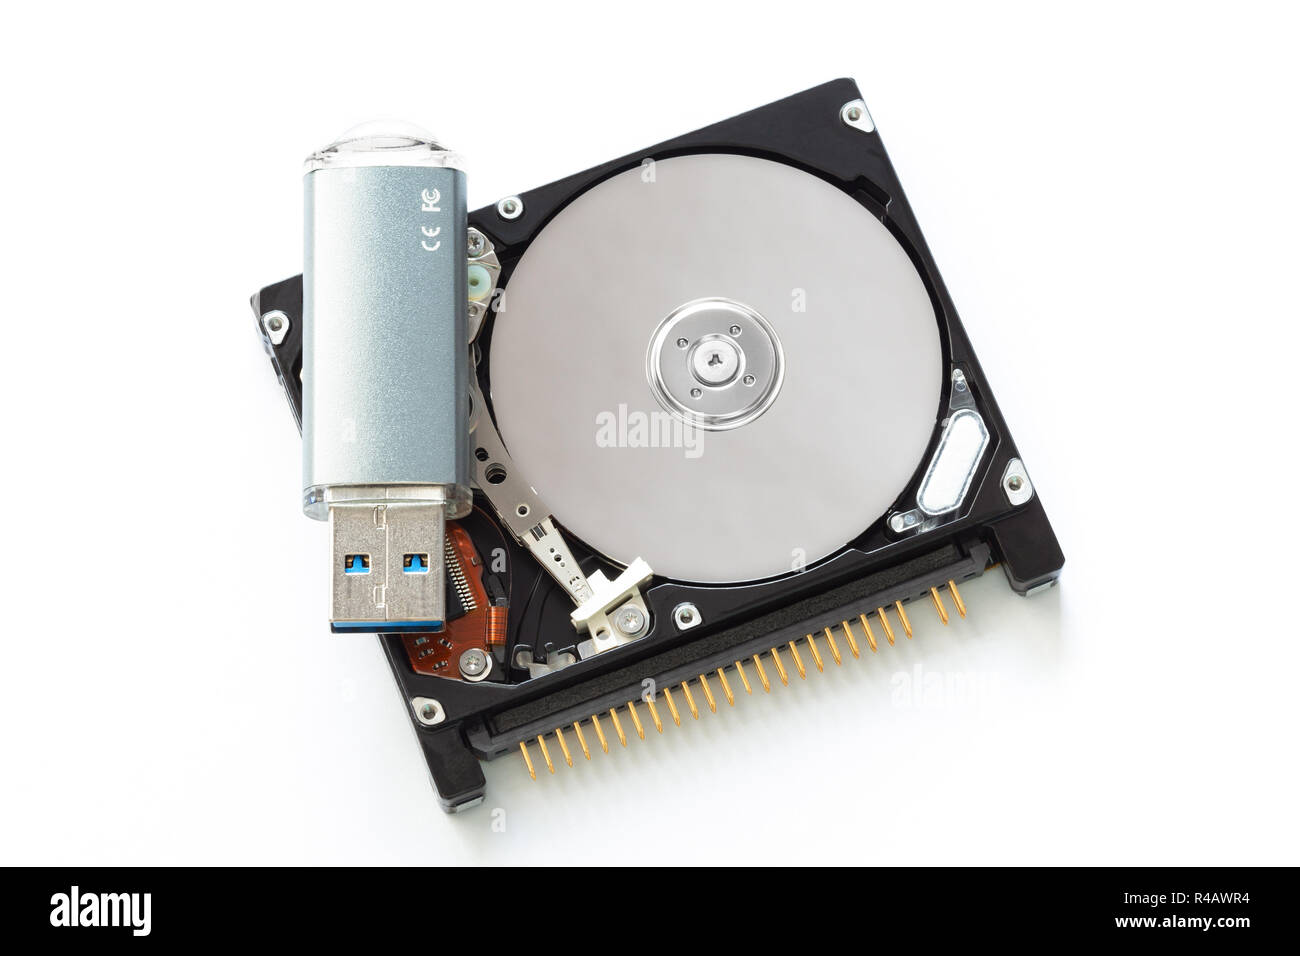 Festplatte 1,8" und Flash Drive auf einem weißen Hintergrund. Größen vergleichen. Stockfoto